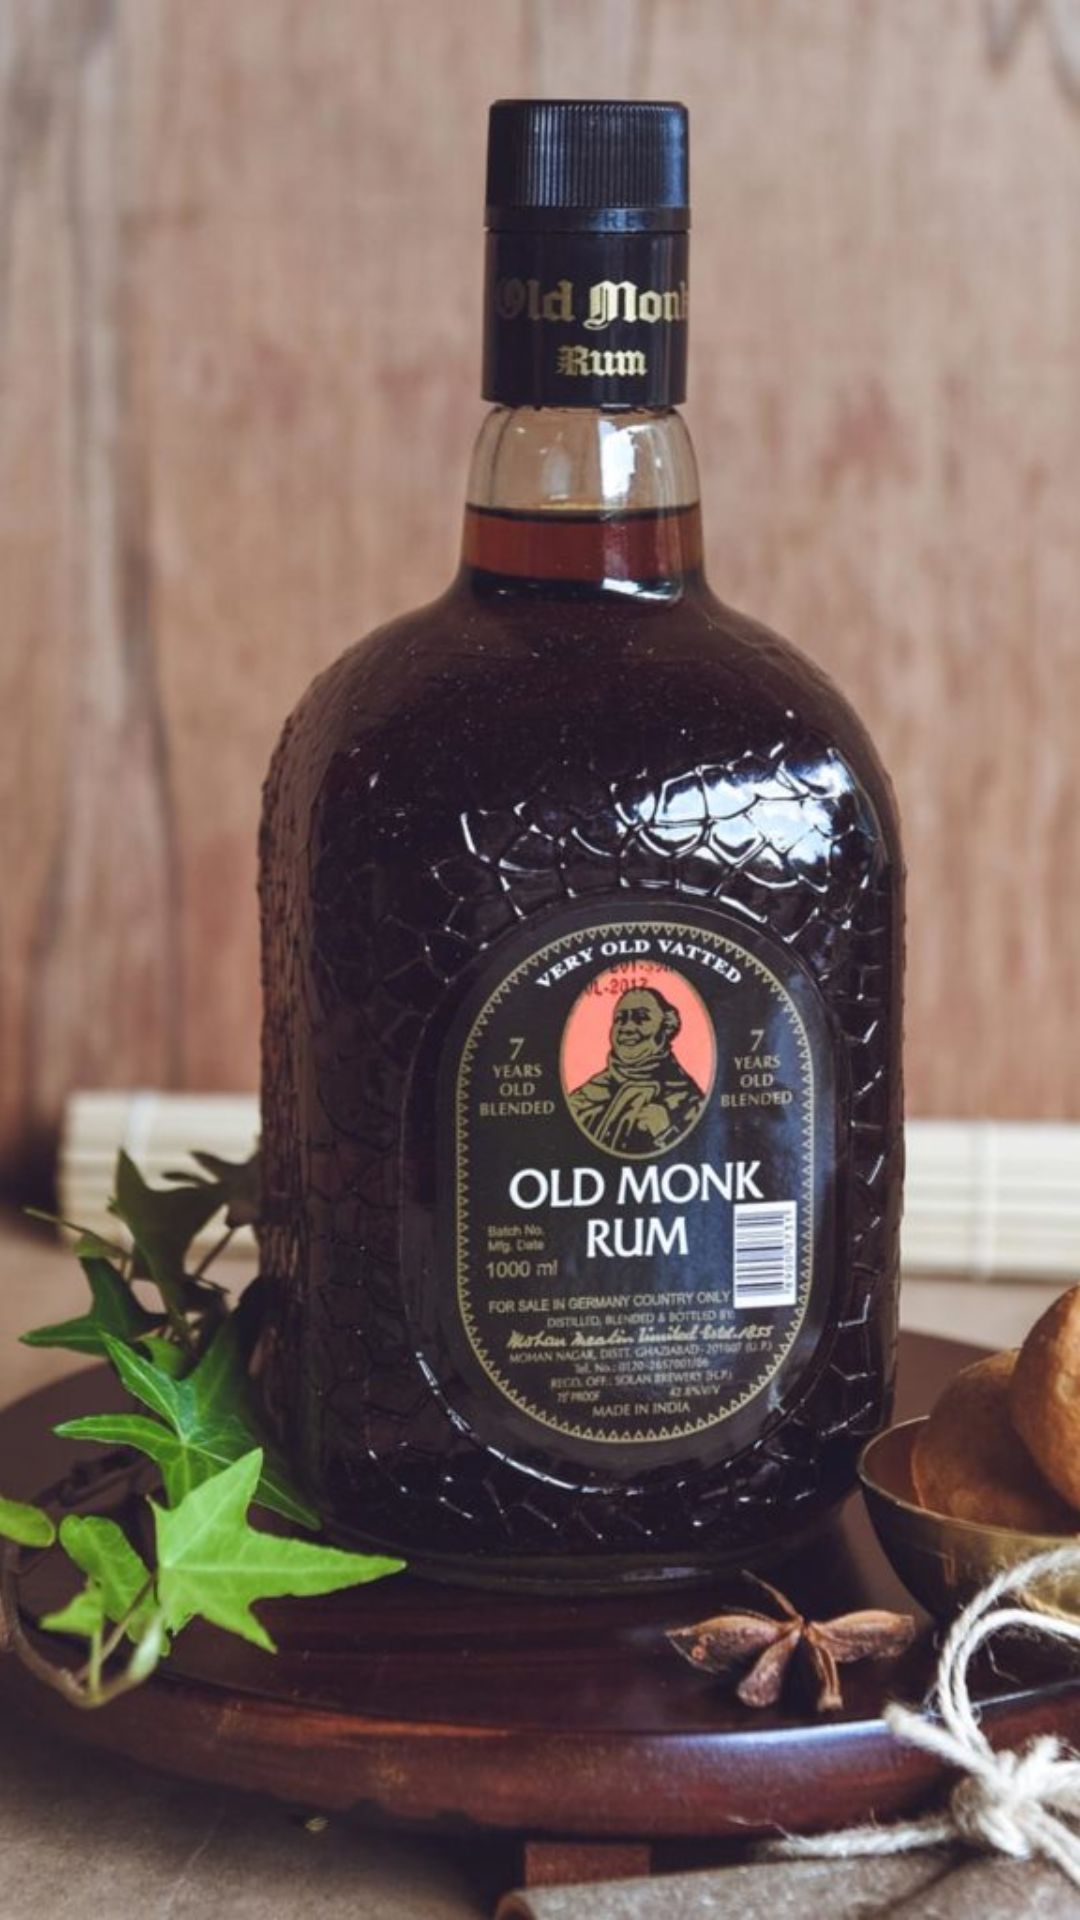 Old Monk Rum की बोतल पर बनी तस्वीर किस बुड्ढे की है?